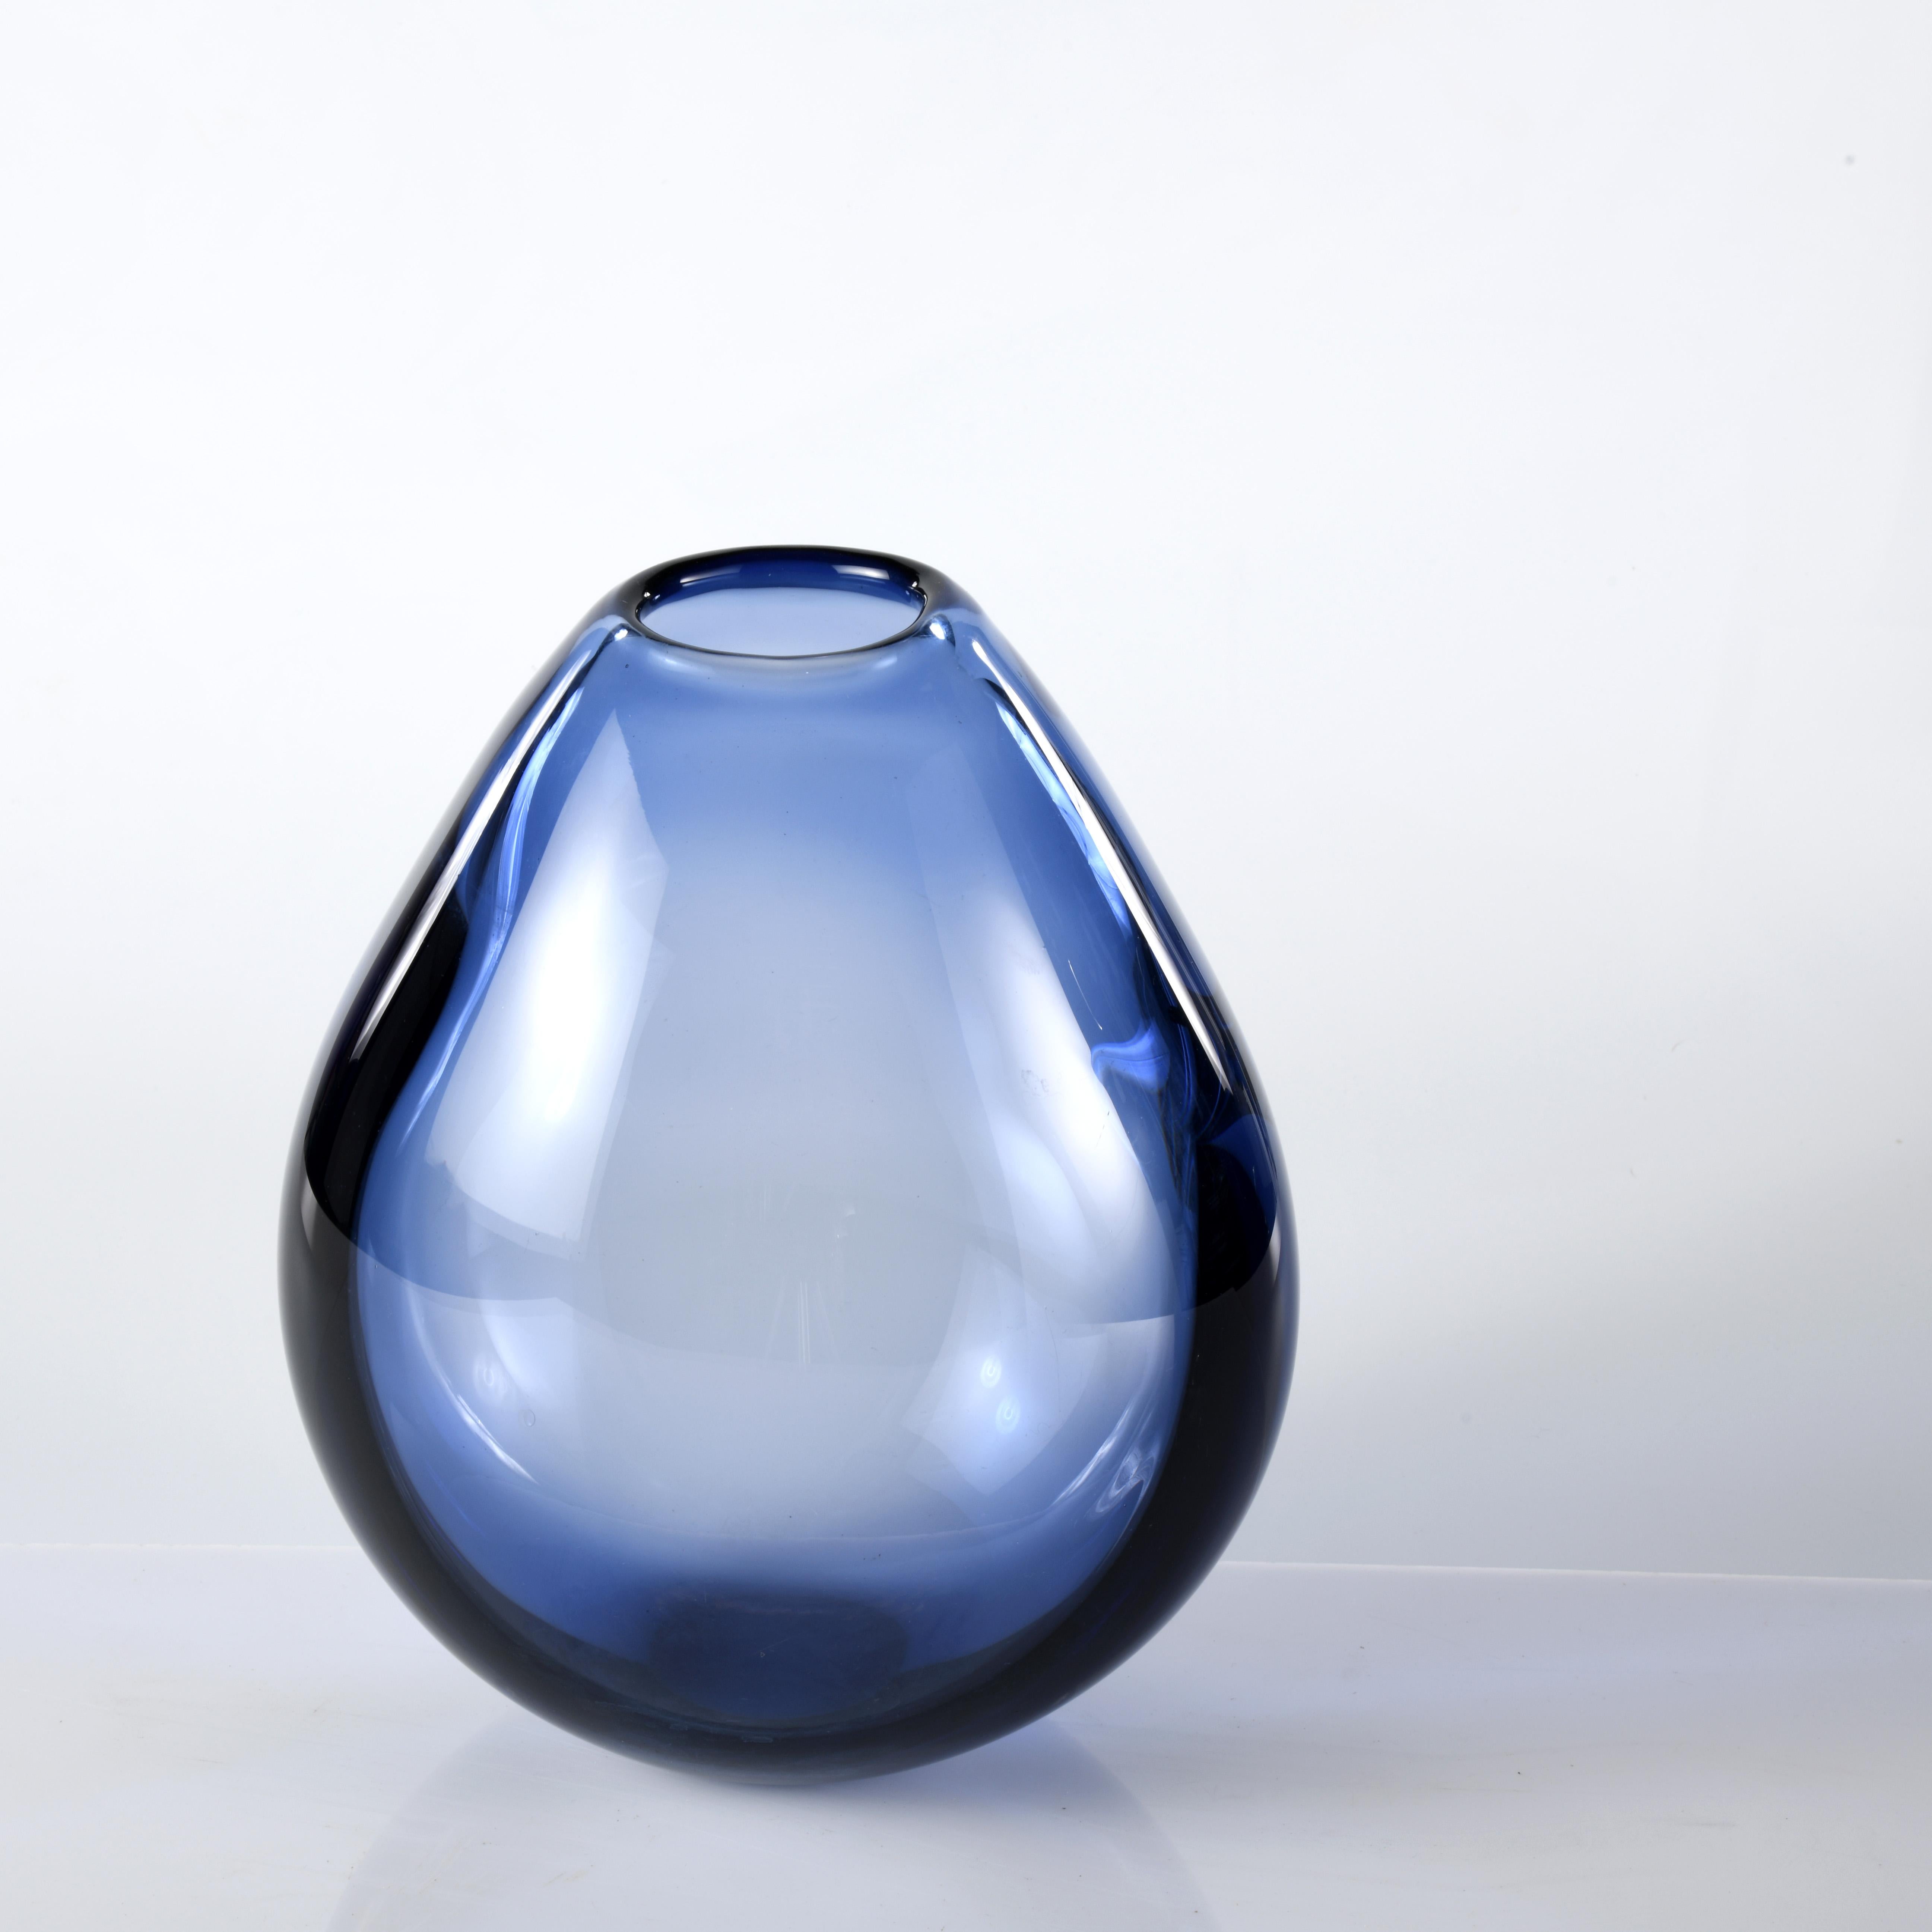 Grand vase réalisé par Per Lutken pour la société de verre danoise Holmegaard dans les années 1960. 
H : 25cm 15x20cm
Per Lutken était un célèbre verrier danois qui a rejoint Holmegaard en 1942 et y a travaillé jusqu'à sa mort. Il a contribué à